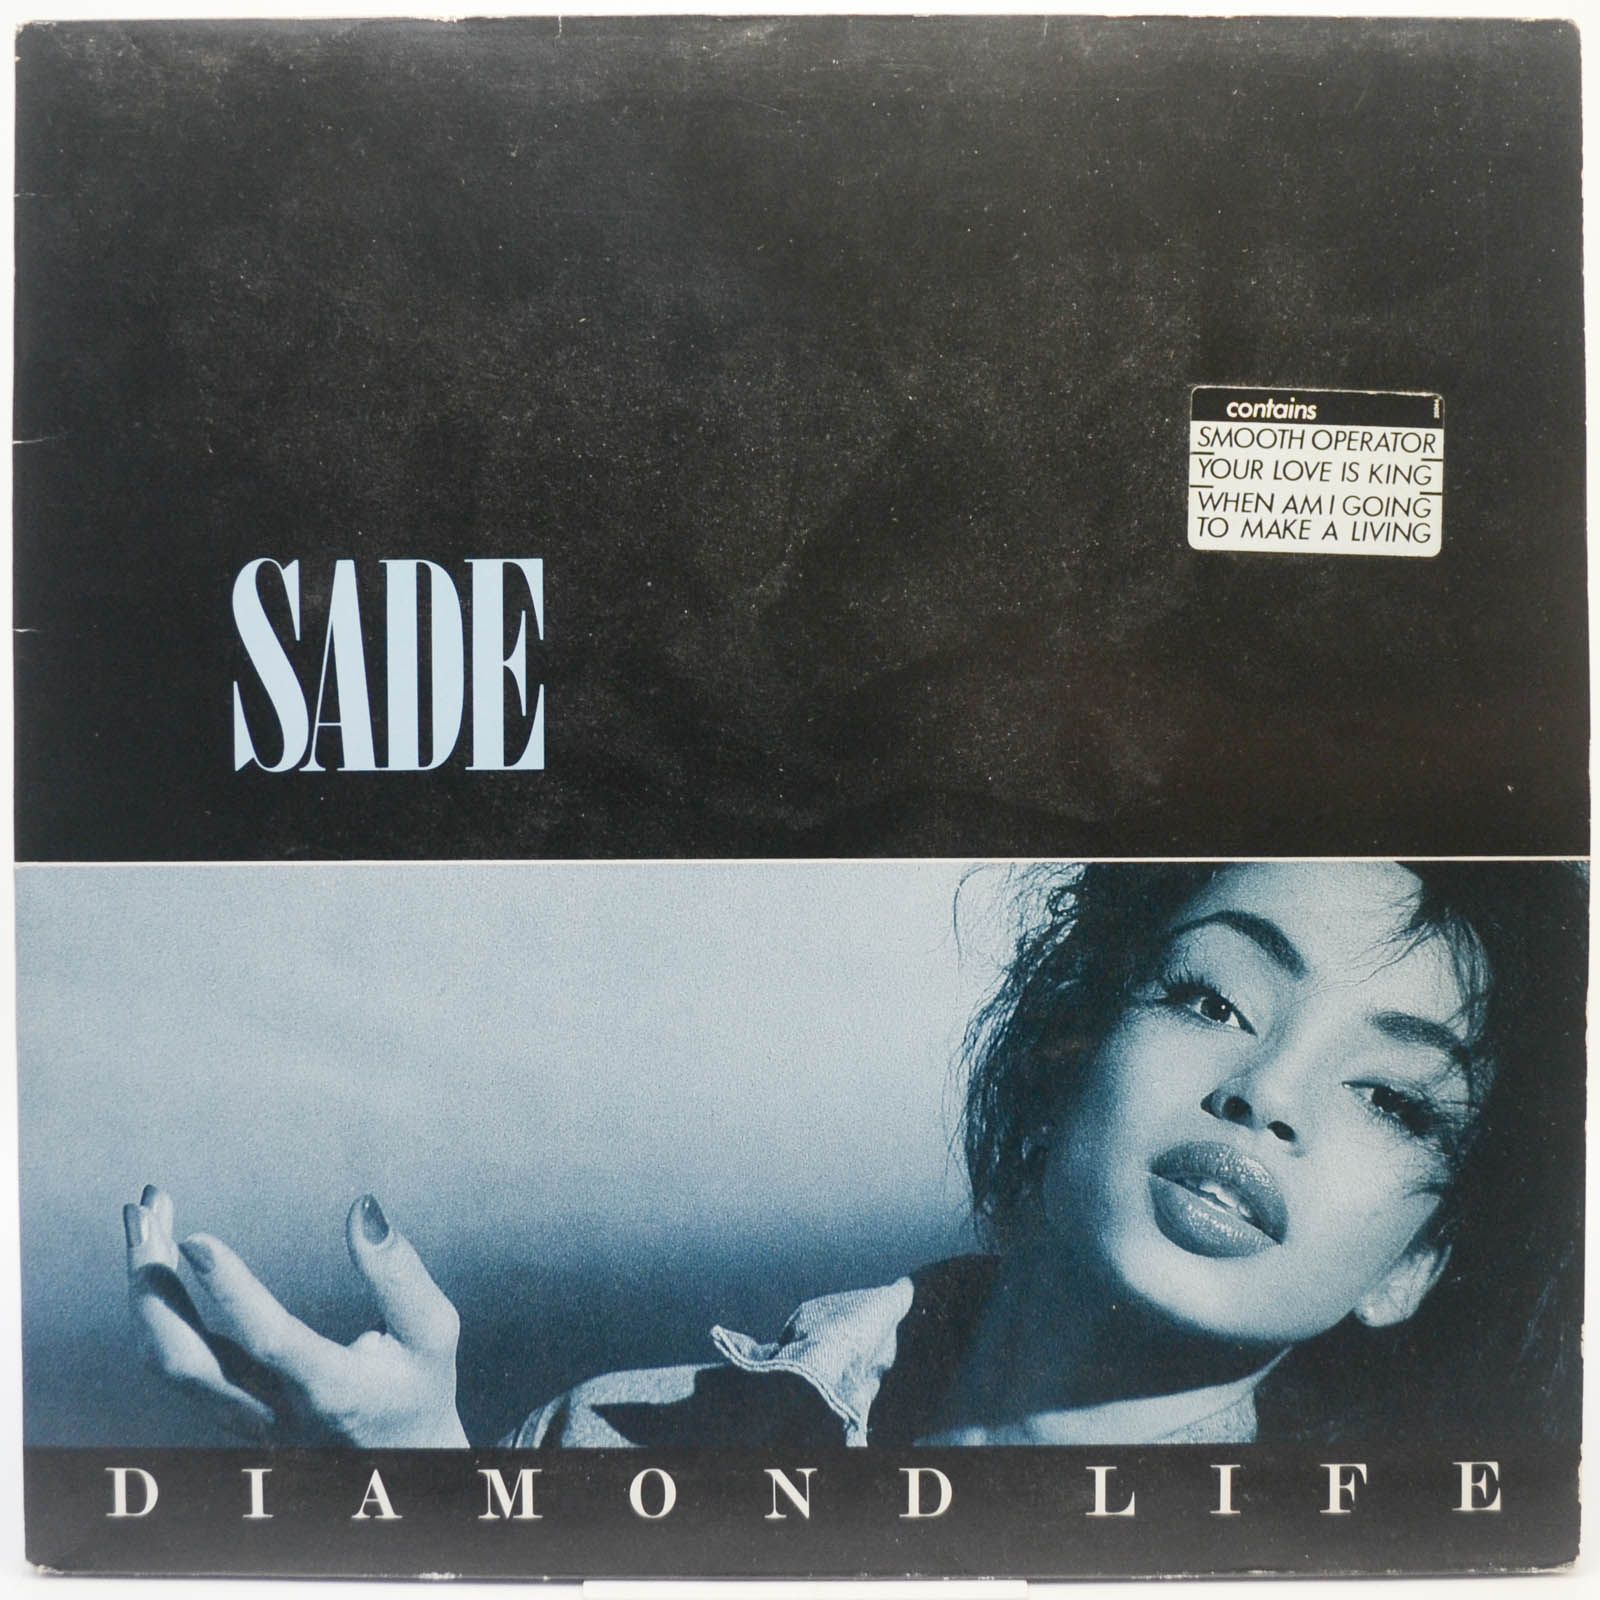 Sade — Diamond Life, 1984